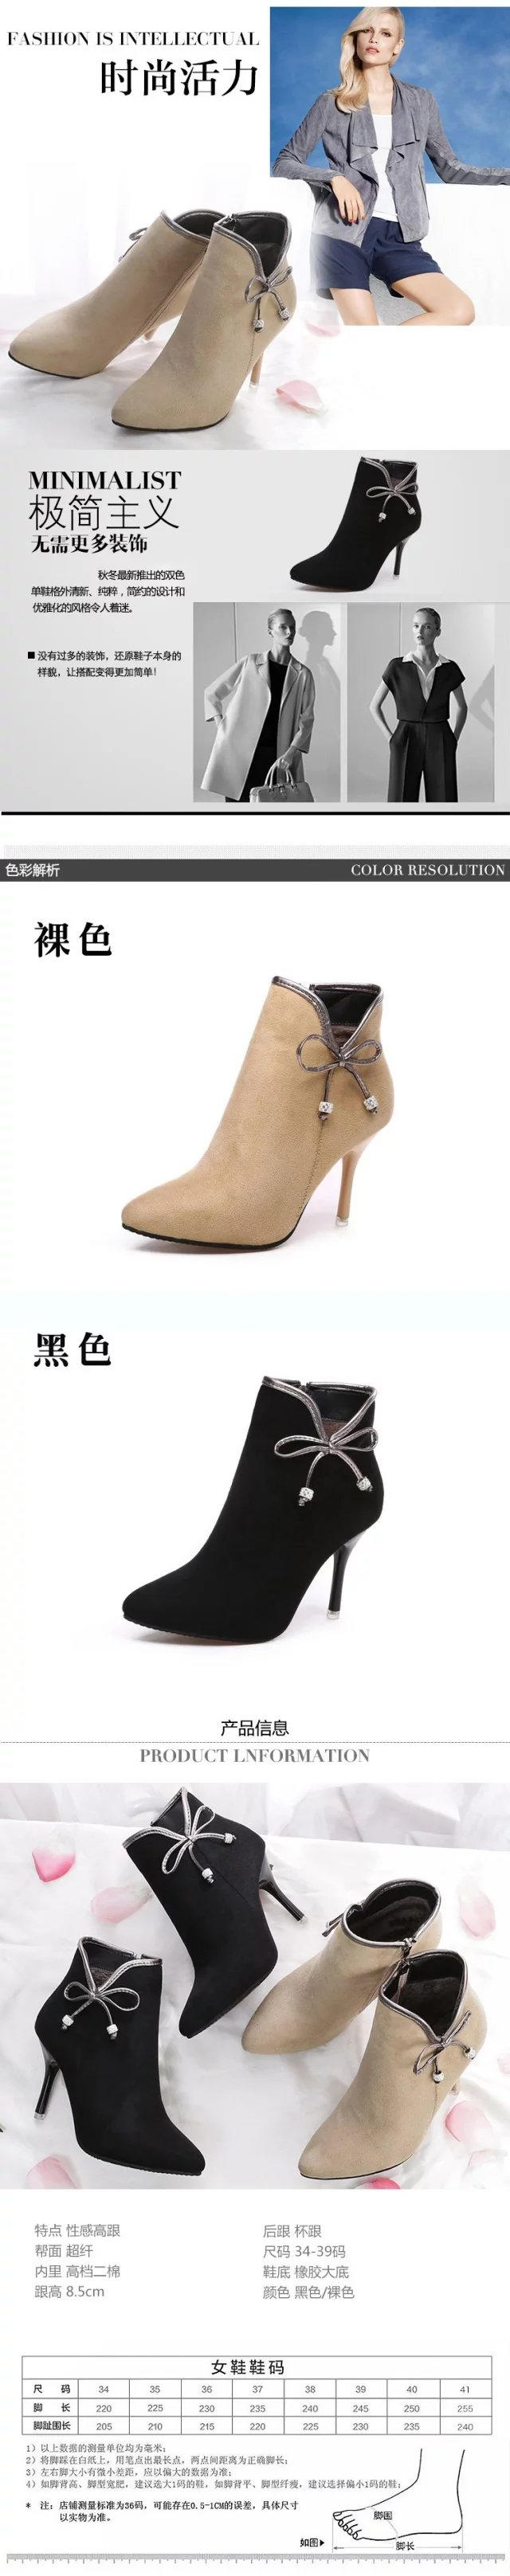 木槿 2015秋季新款时装靴粗跟马丁靴潮女短靴真皮高跟女靴英伦羊皮靴子